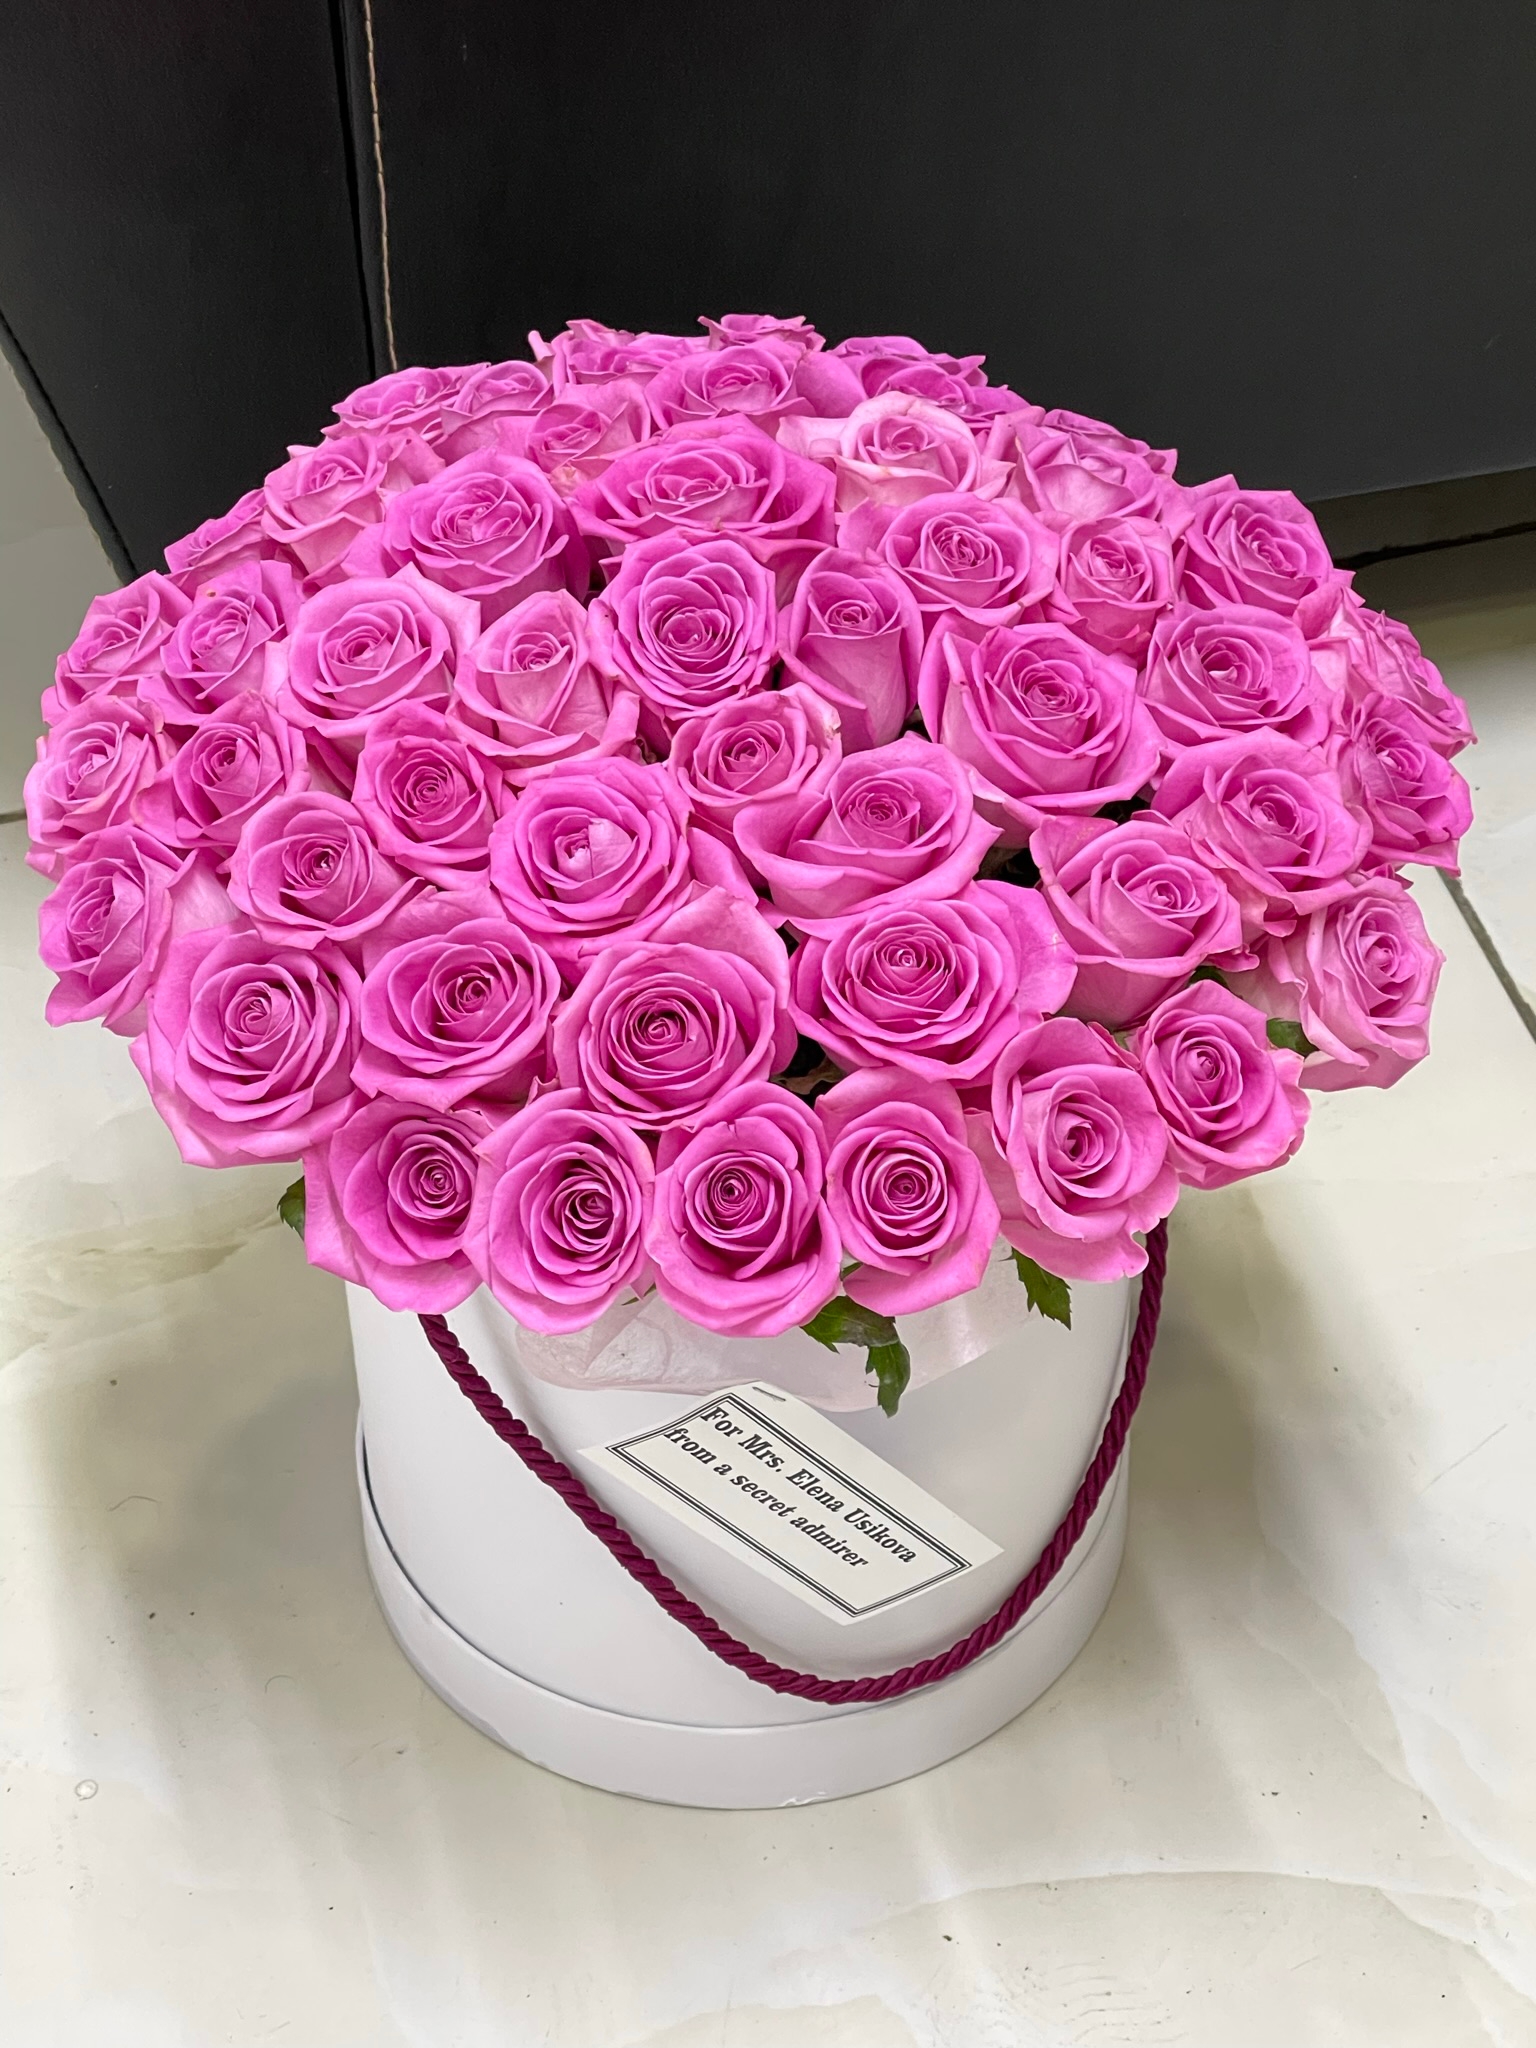  Доставка цветов в Кемер  51 шт розовых роз в белой коробке